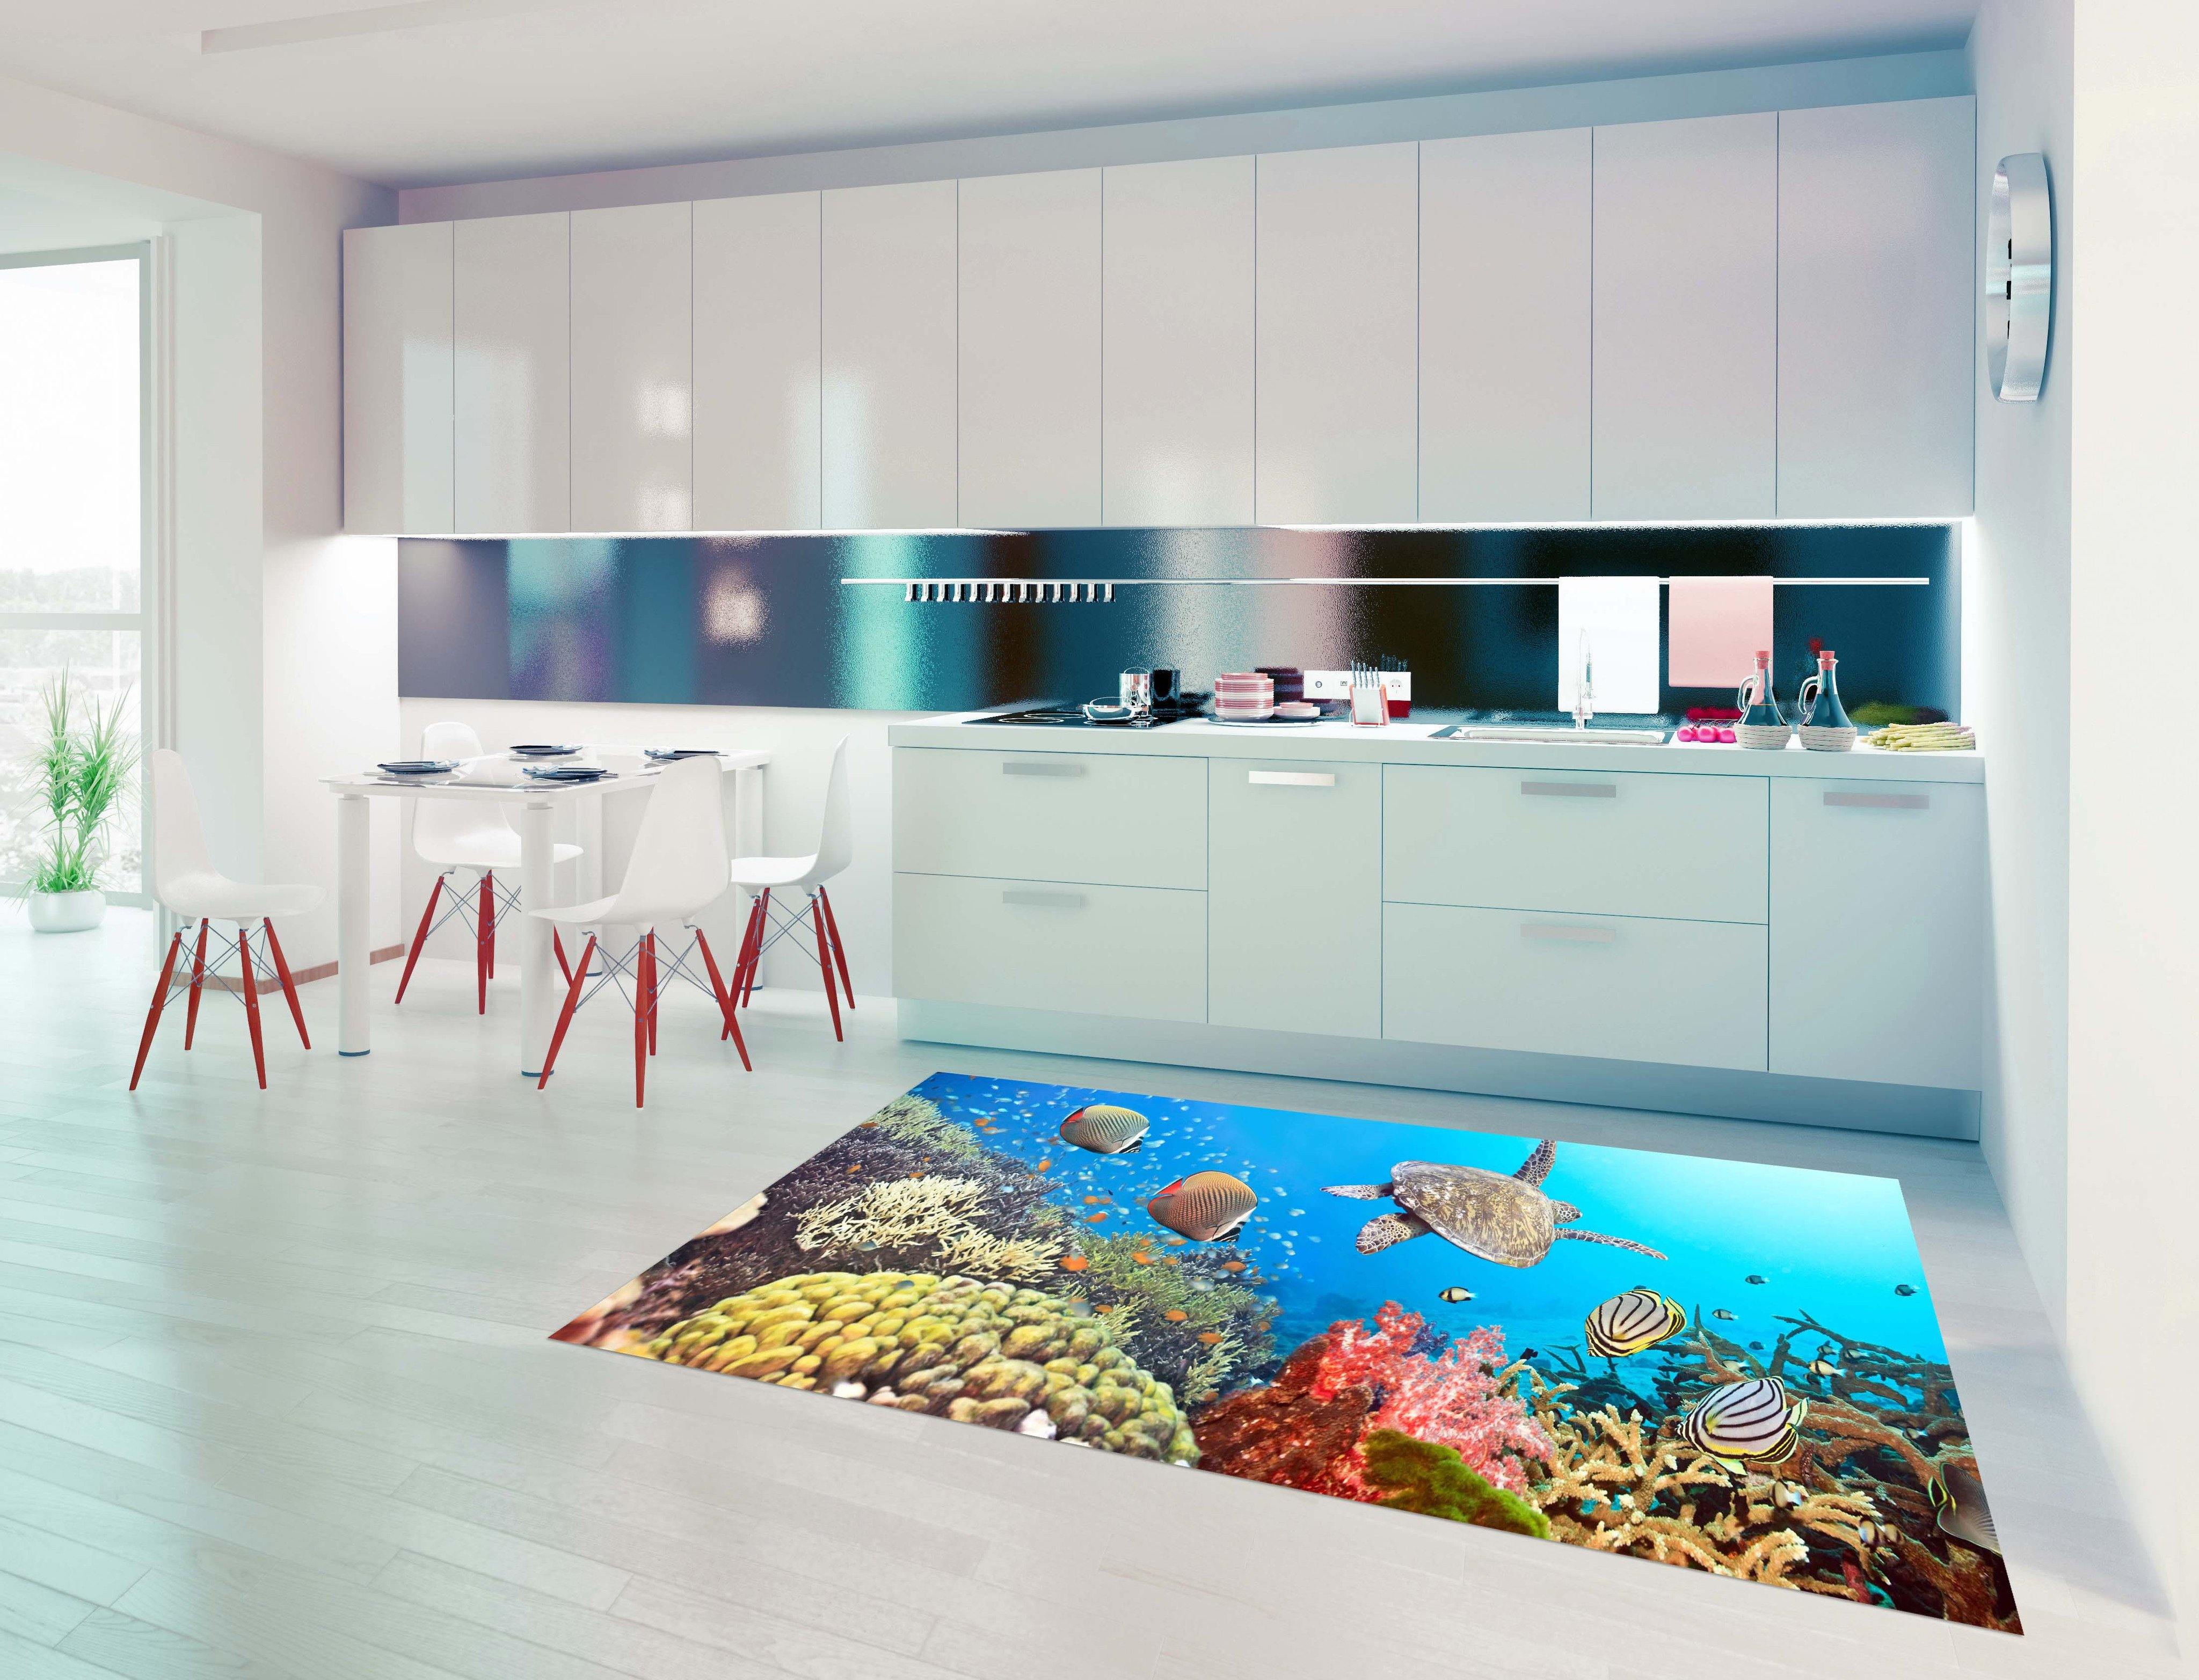 3D Ocean World 13 Kitchen Mat Floor Mural Wallpaper AJ Wallpaper 